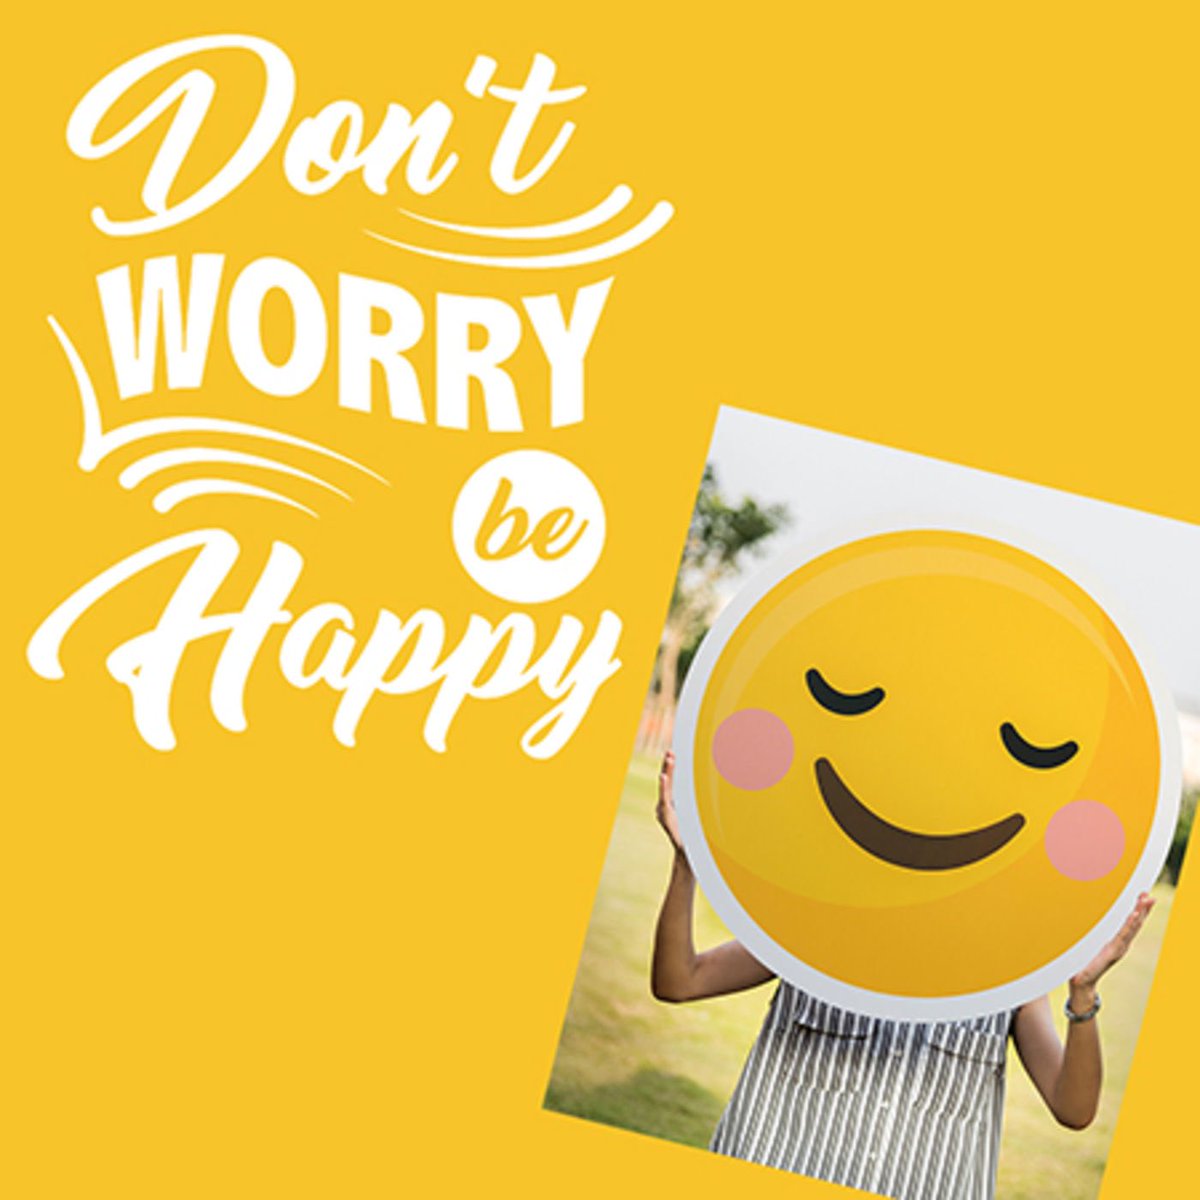 Bi happy. Don`t worry be Happy. Don't worry be Happy картинки. Донт вори би Хэппи. Картина don't worry be Happy.